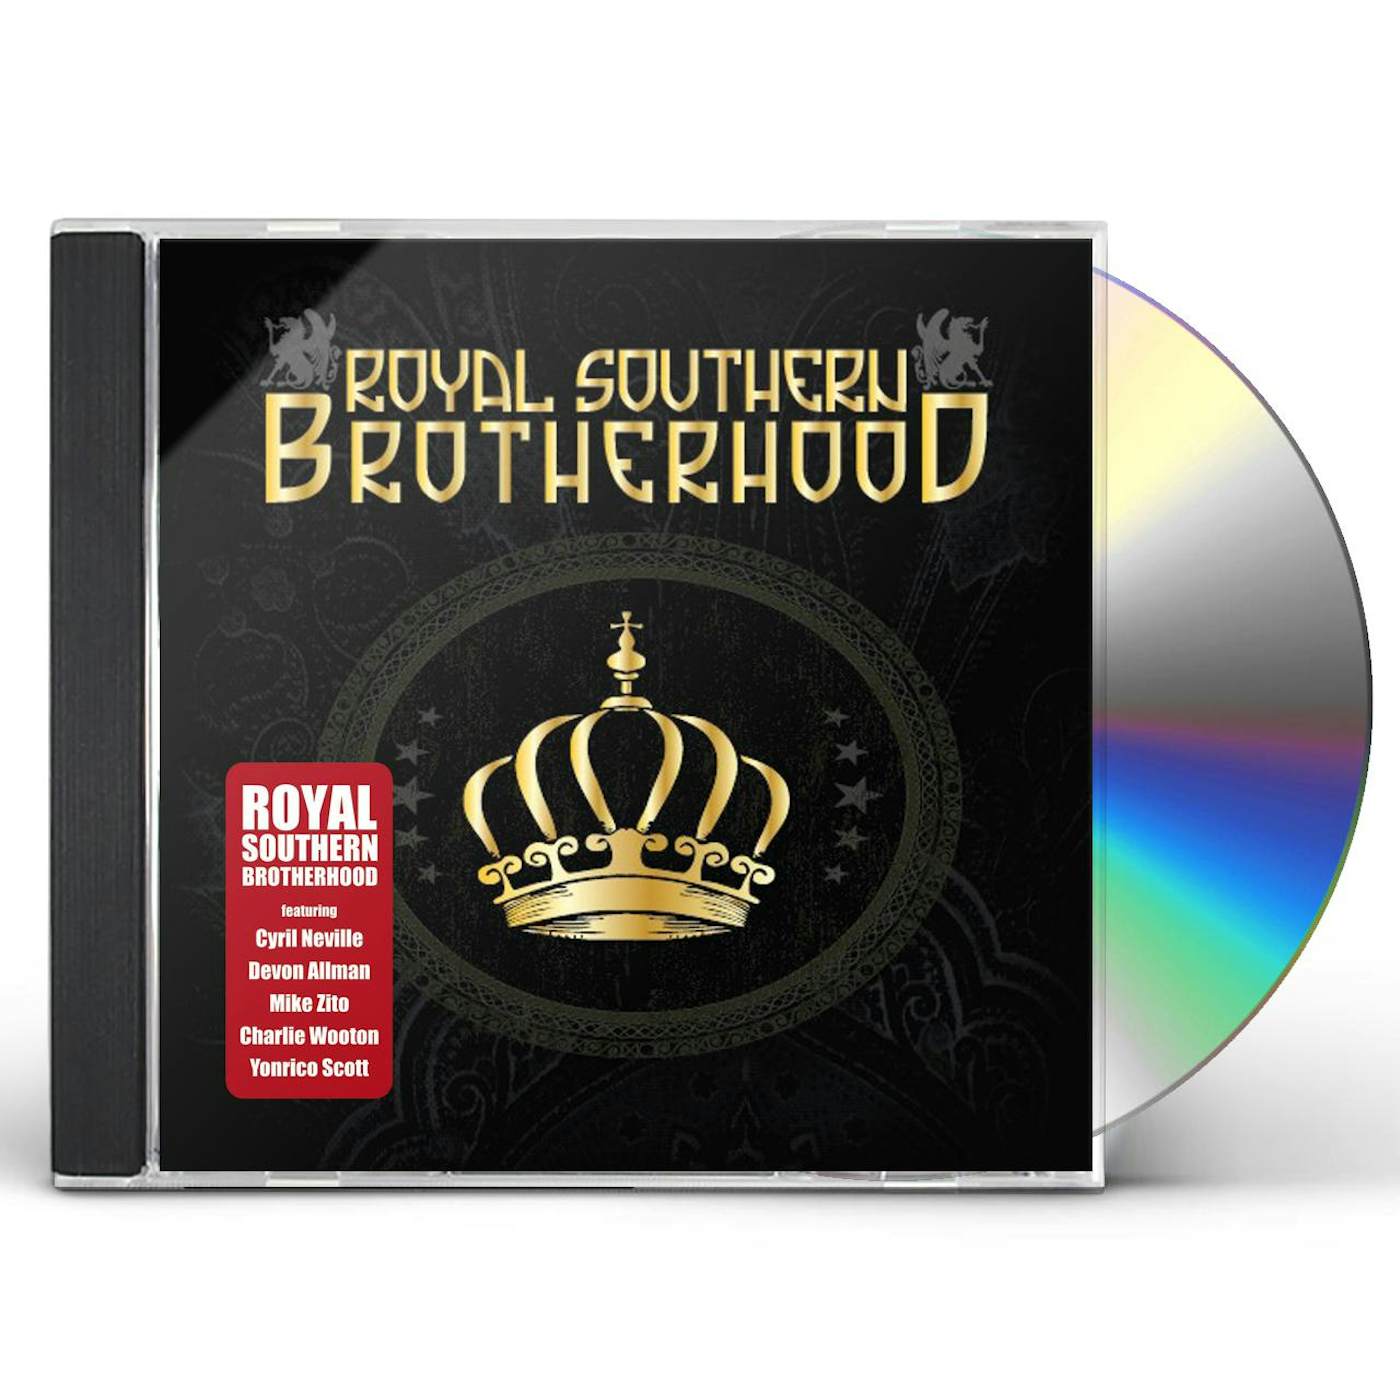 ROYAL SOUTHERN BROTHERHOOD CD